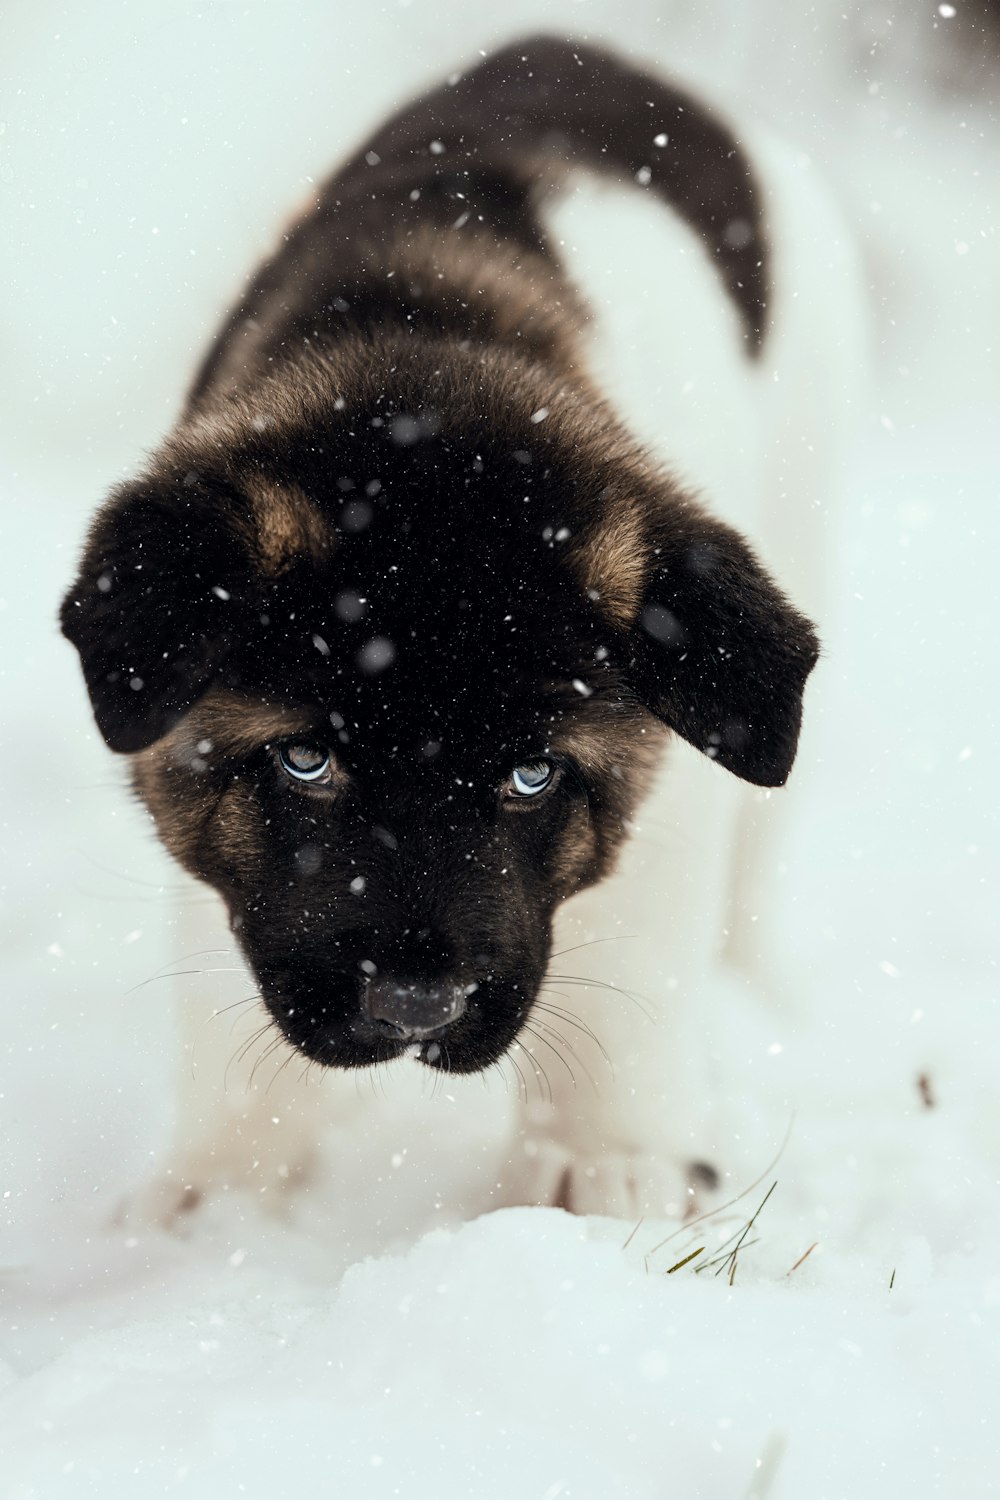 日中の雪に覆われた地面の黒と黄褐色のジャーマンシェパードの子犬